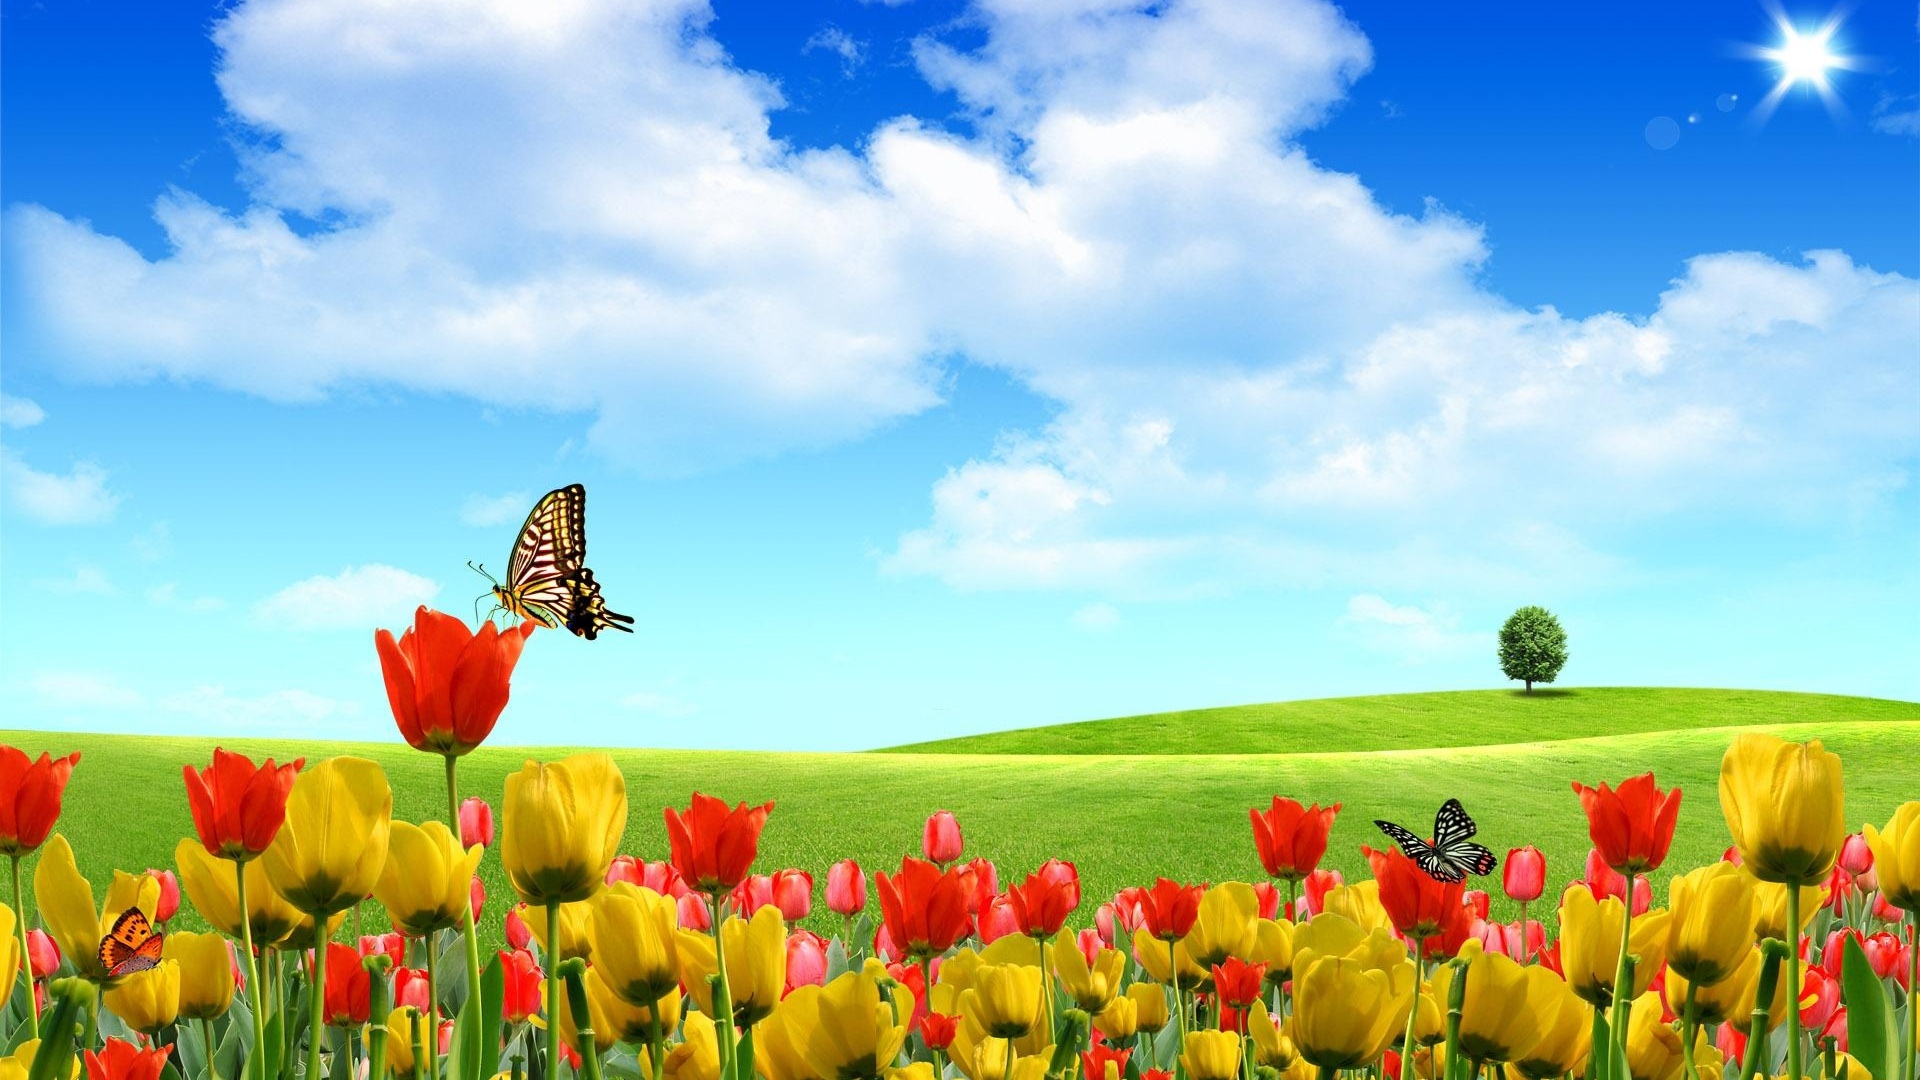 tulips_flowers_field_tree_sky_sun_clouds_butterflies_31239_1920x1080